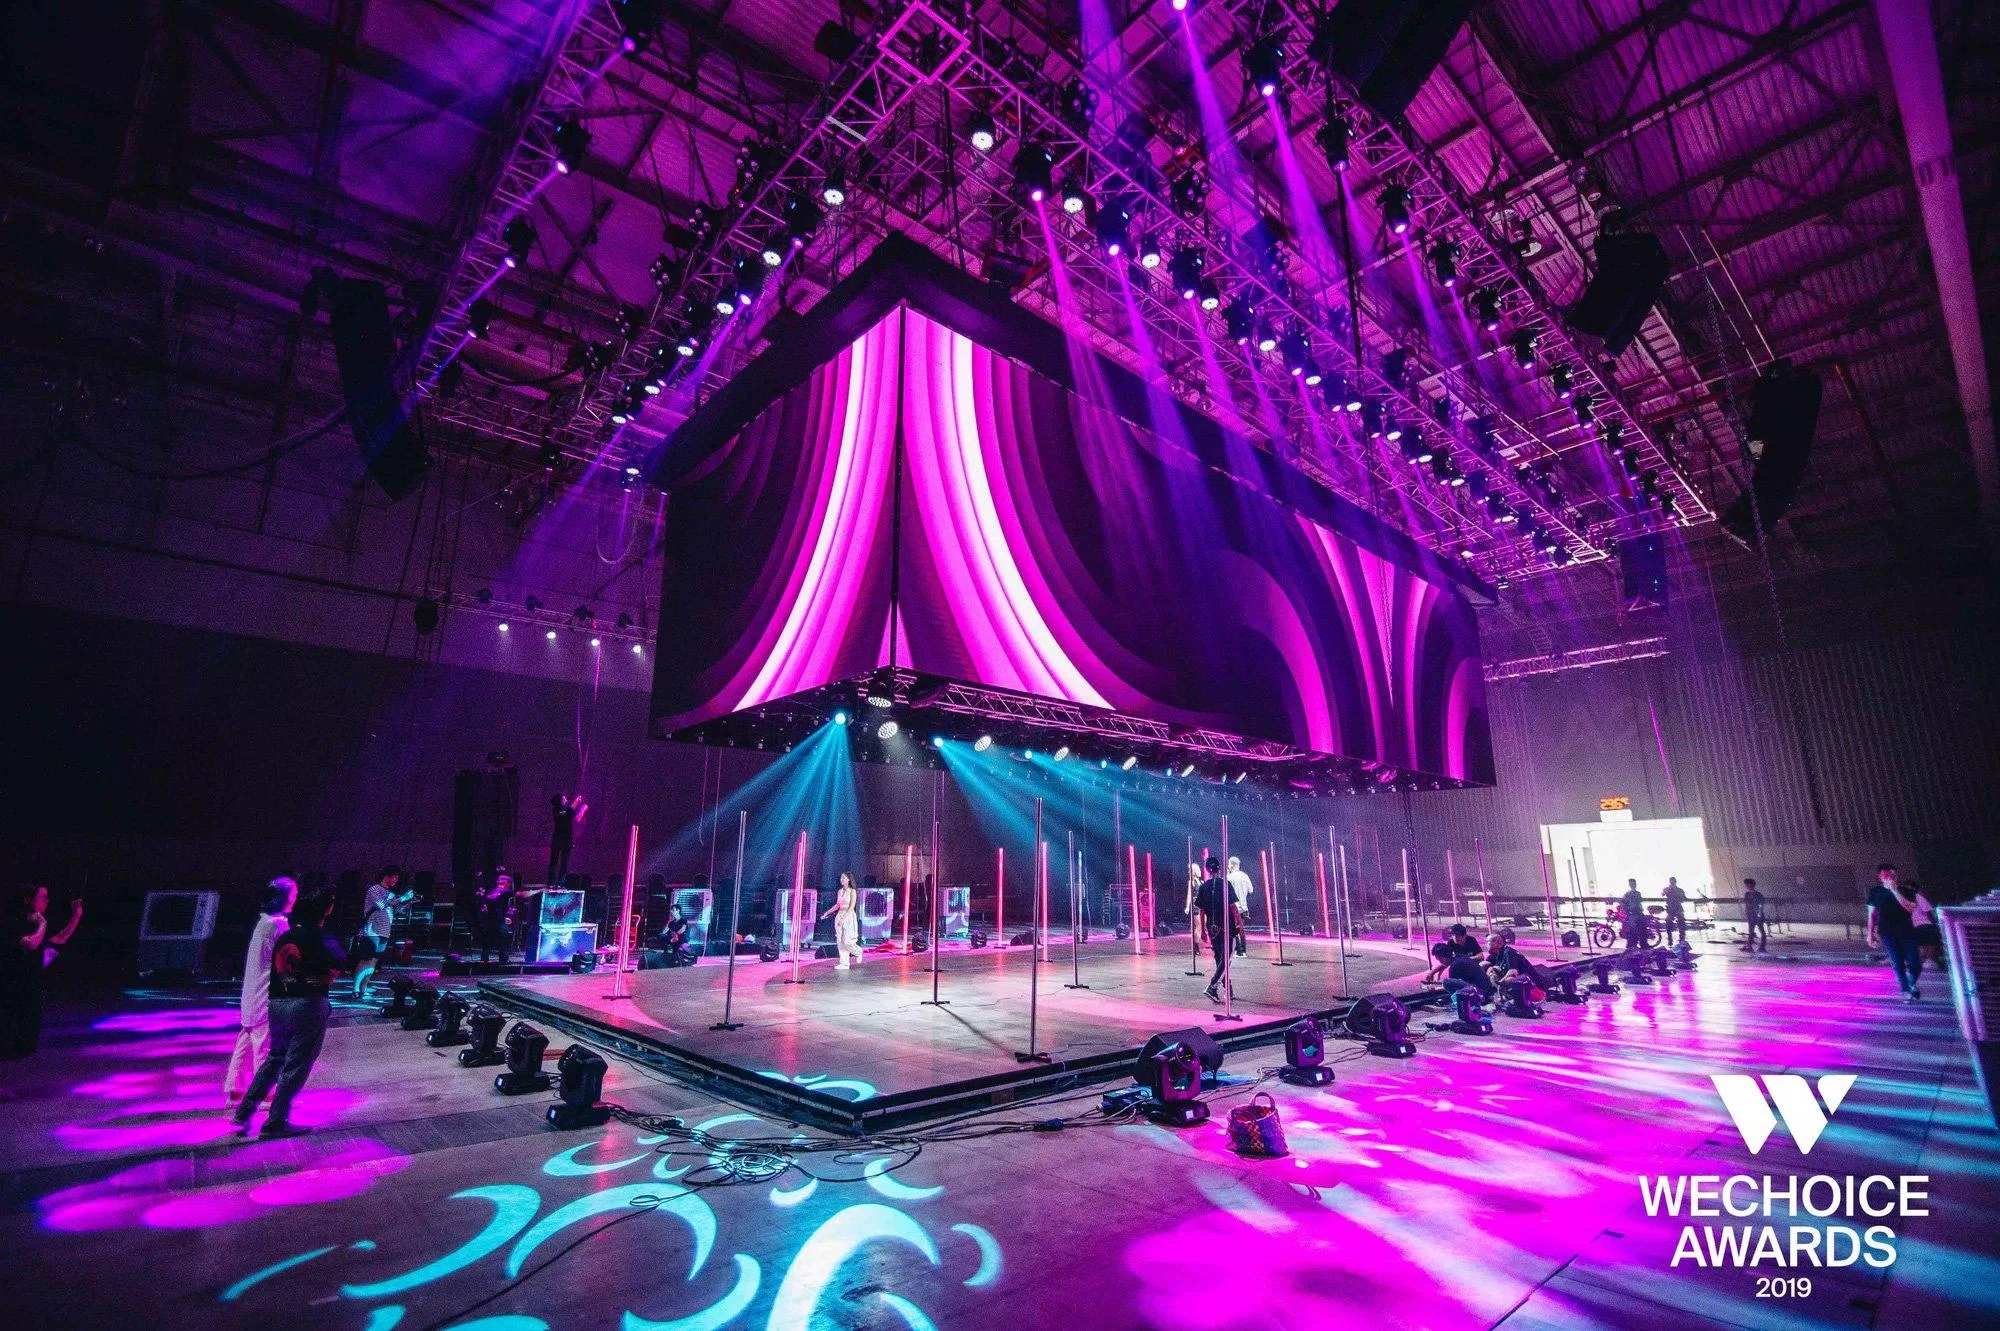 Toàn cảnh sân khấu được đầu tư hoành tráng và quy mô của Gala WeChoice Awards 2019